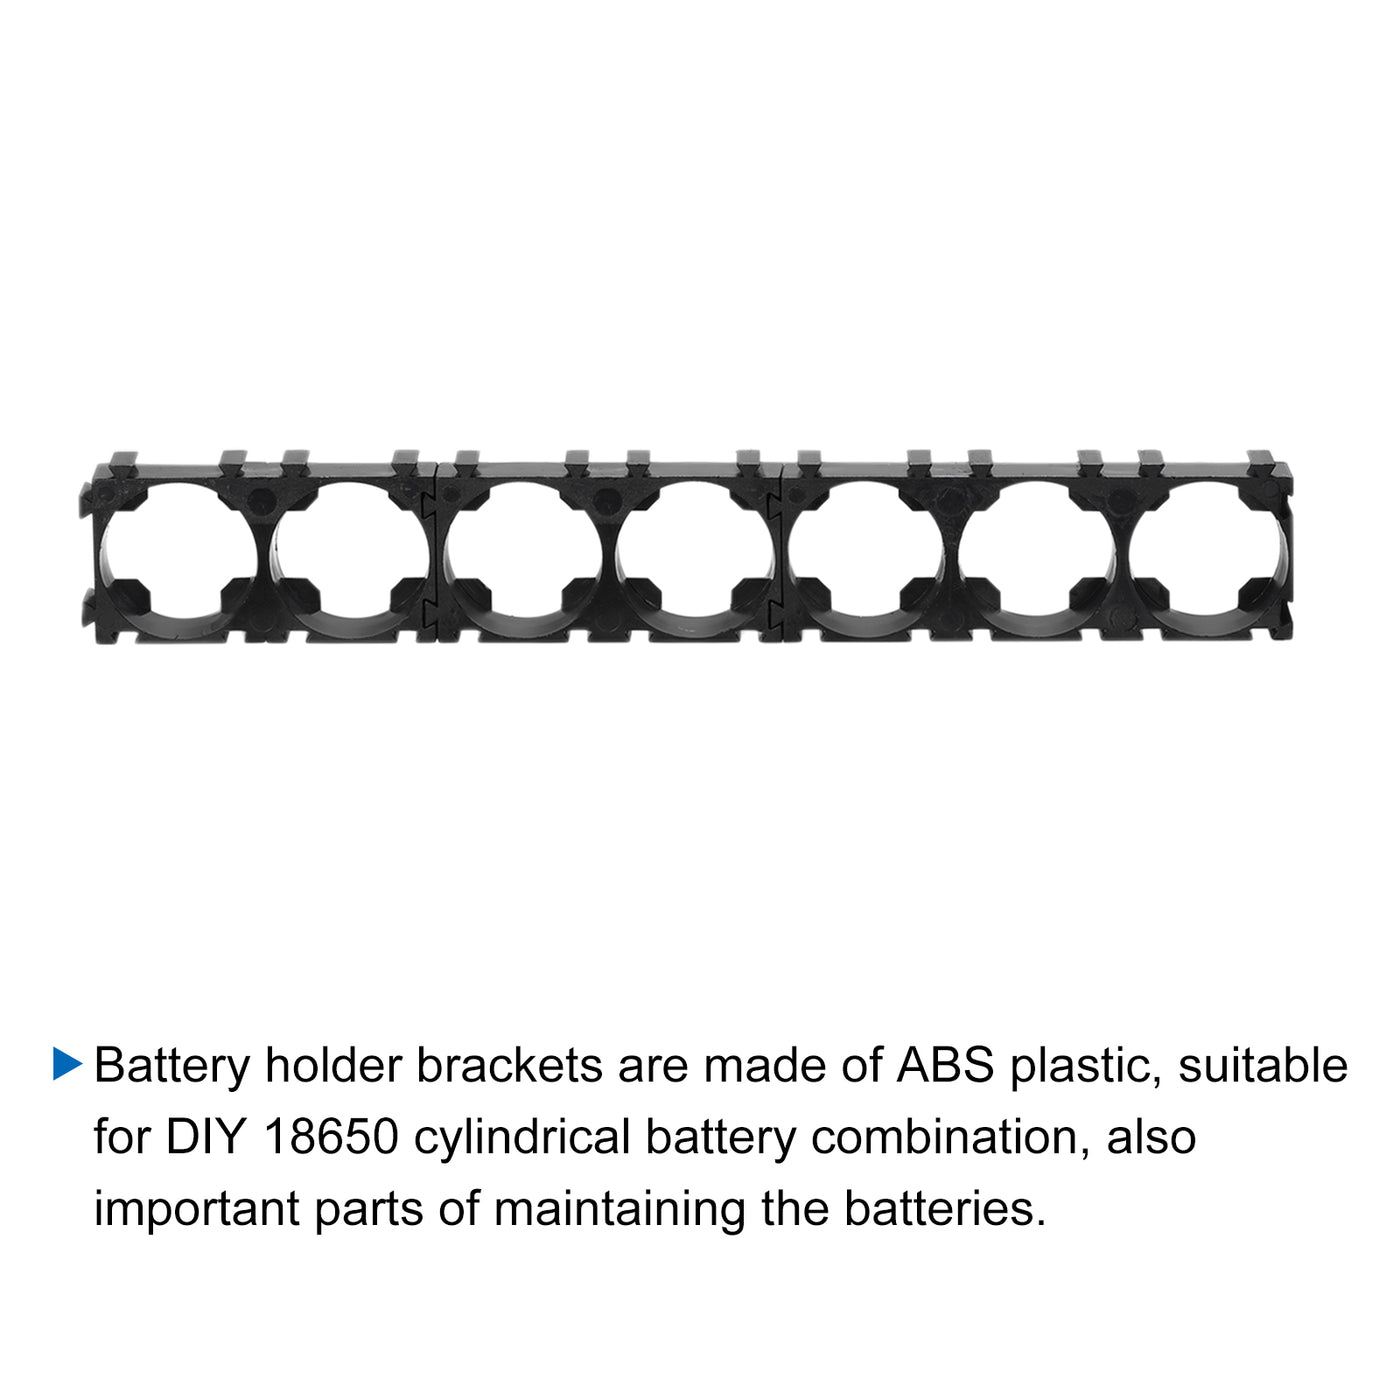 Harfington Battery Holder Bracket 7 x 1 18.4mm Diameter for DIY Battery Pack of 10